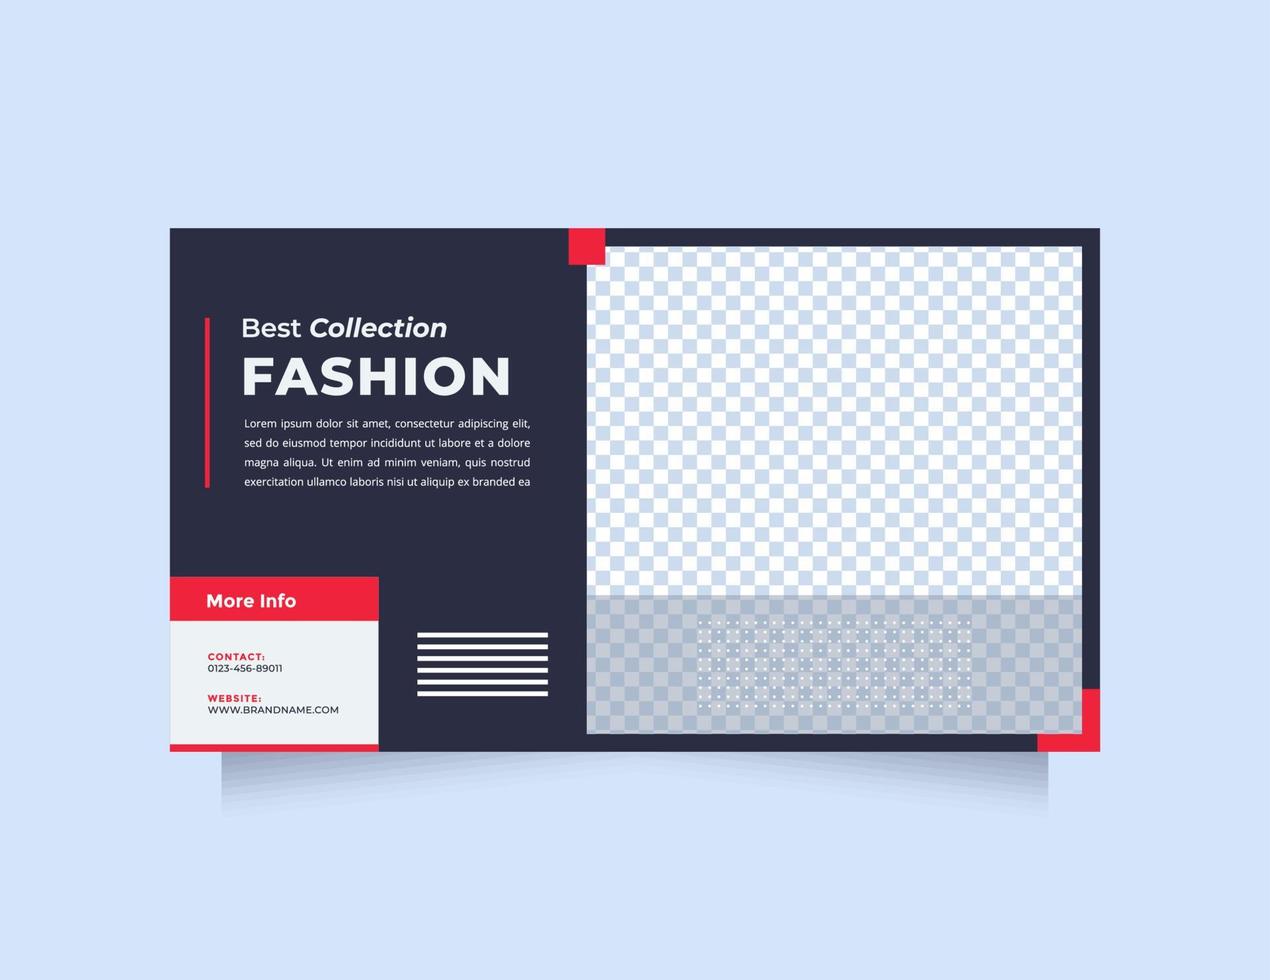 modelo de banner web design minimalista e criativo para publicidade. banner de mídia social de design vermelho azul moderno e moderno, especialmente produtos de moda vetor